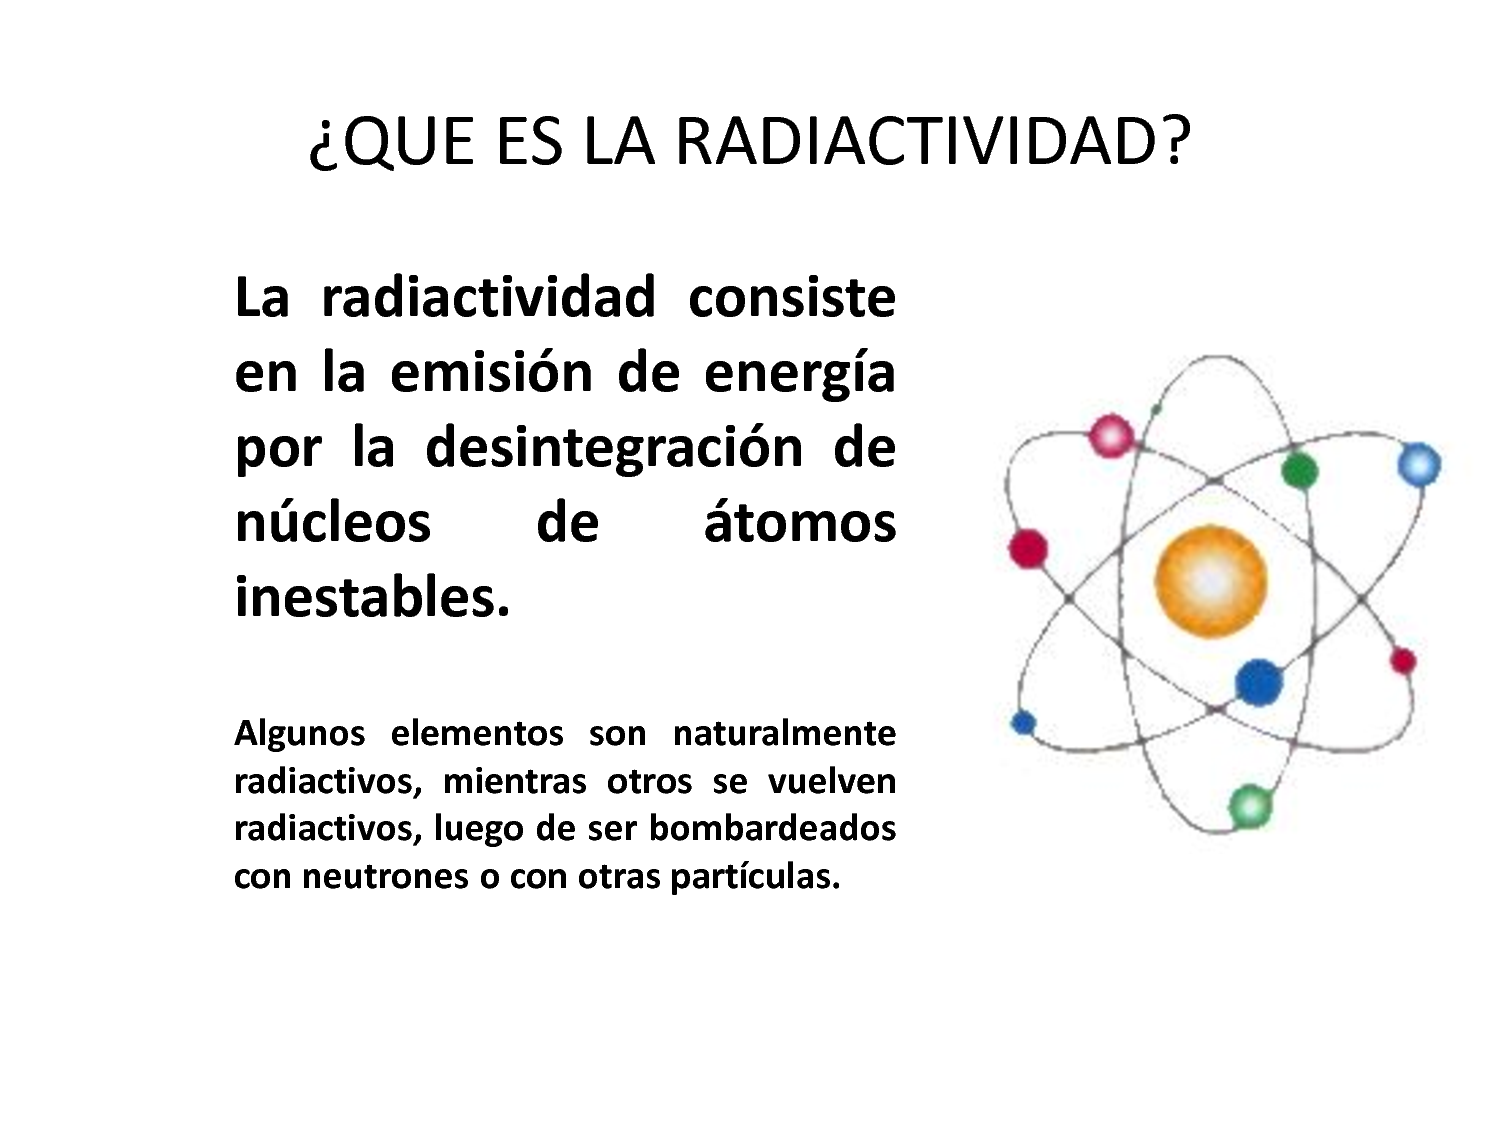 Sobre la radioactividad